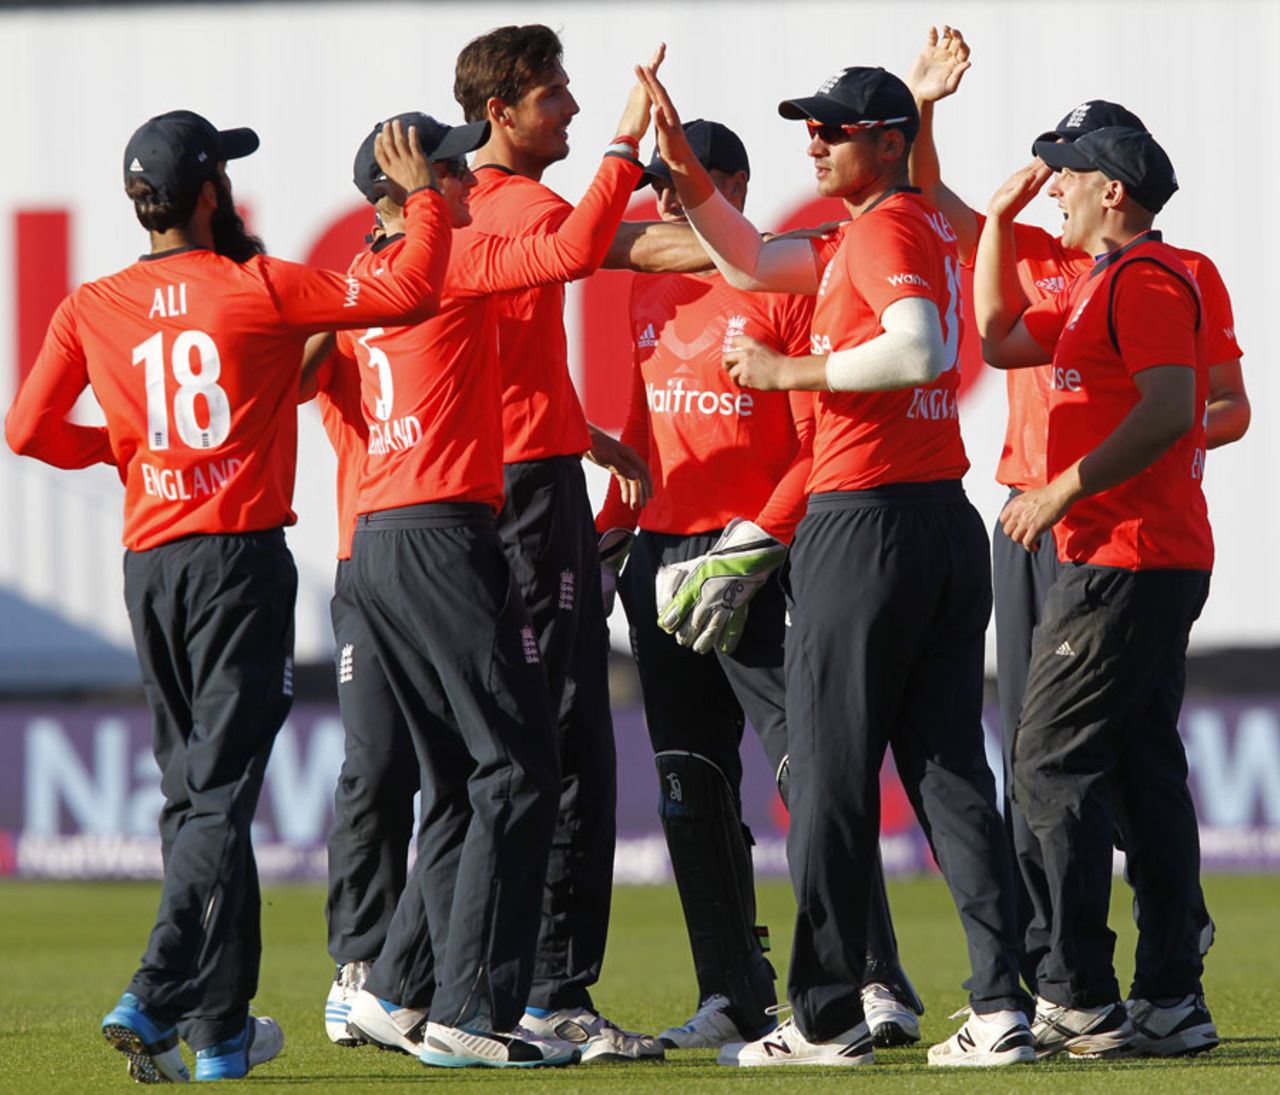 High fives all round after Steven Finn removed Virat Kohli, England v India, only T20, Edgbaston, September 7, 2014